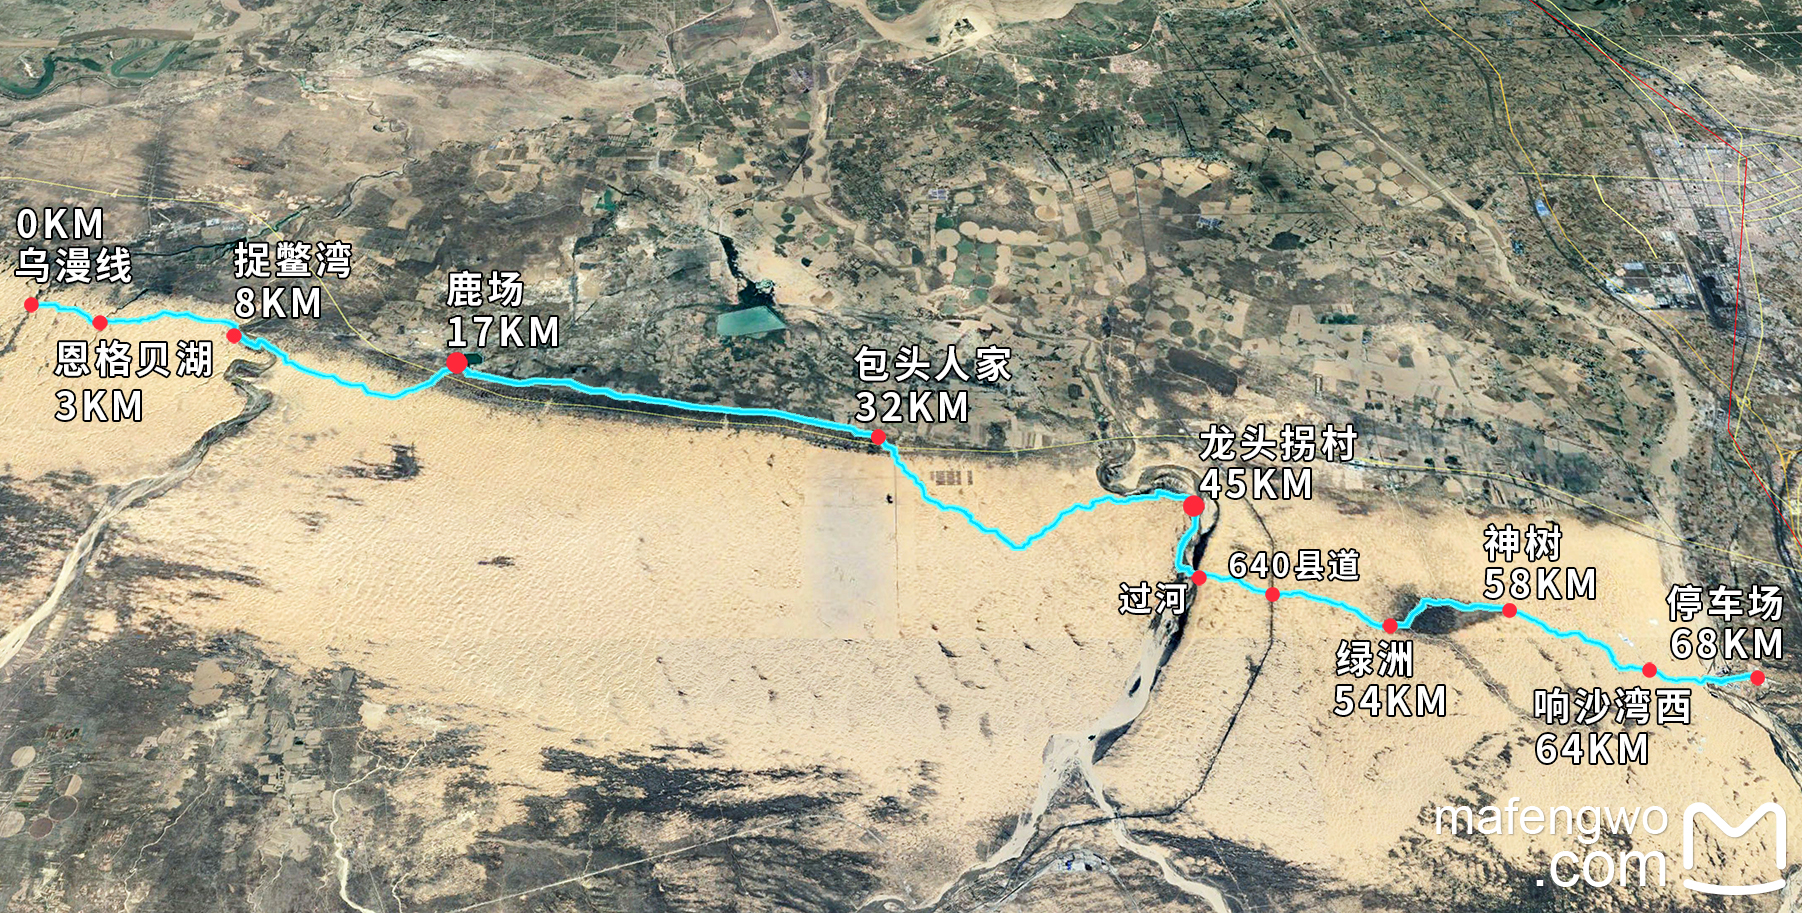 【鄂尔多斯】库布齐沙漠东线穿越,探索内蒙古大沙漠